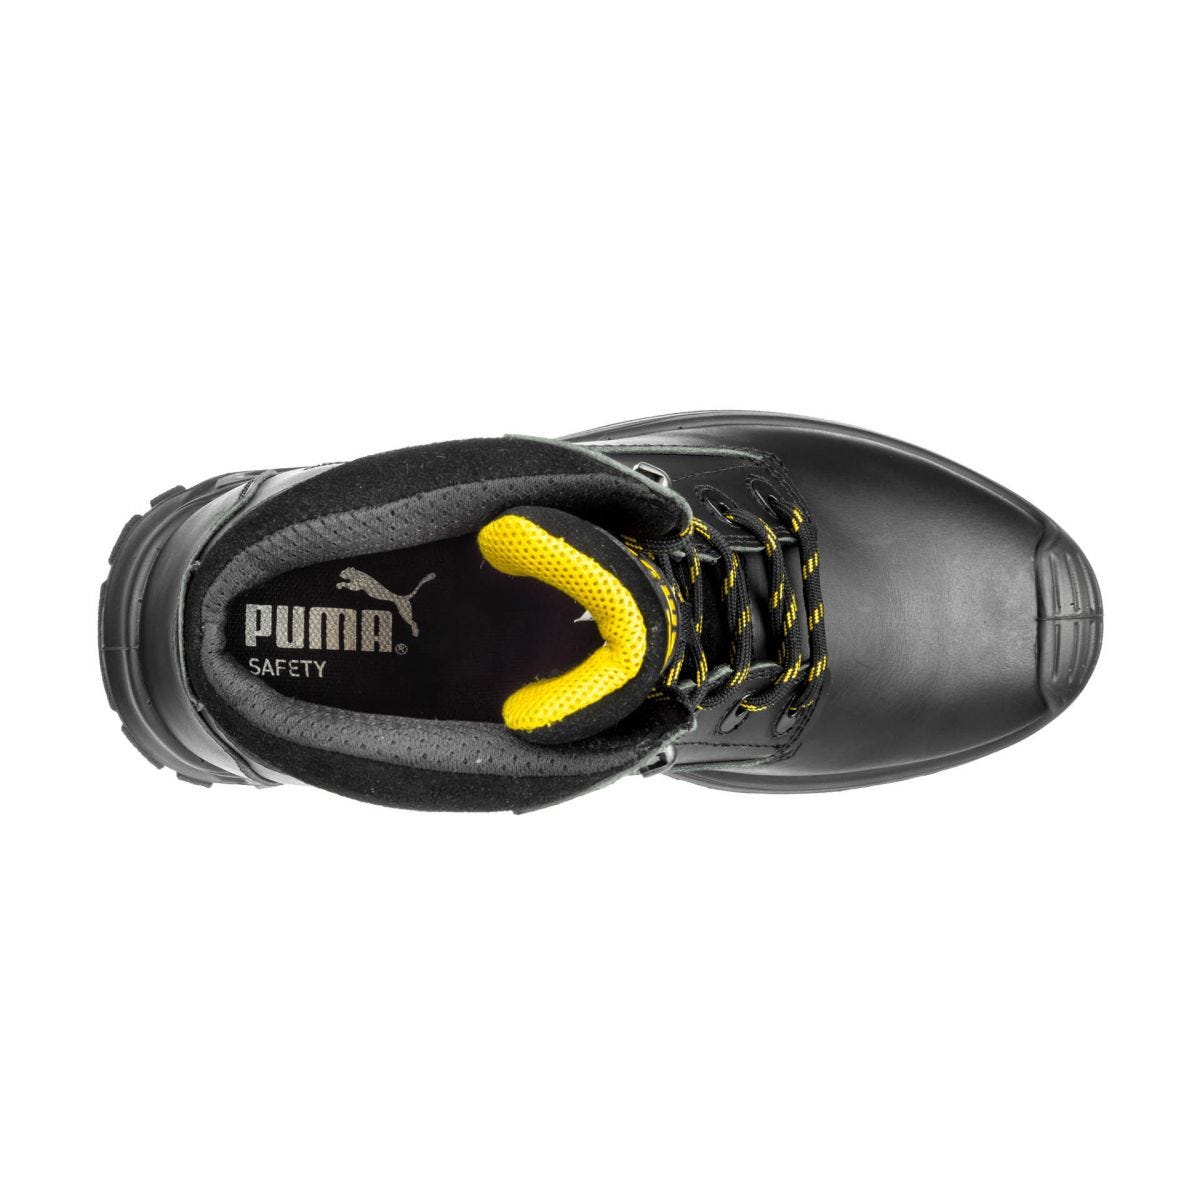 Chaussures de sécurité Borneo mid S3 HRO SRC noir - Puma - Taille 39 2